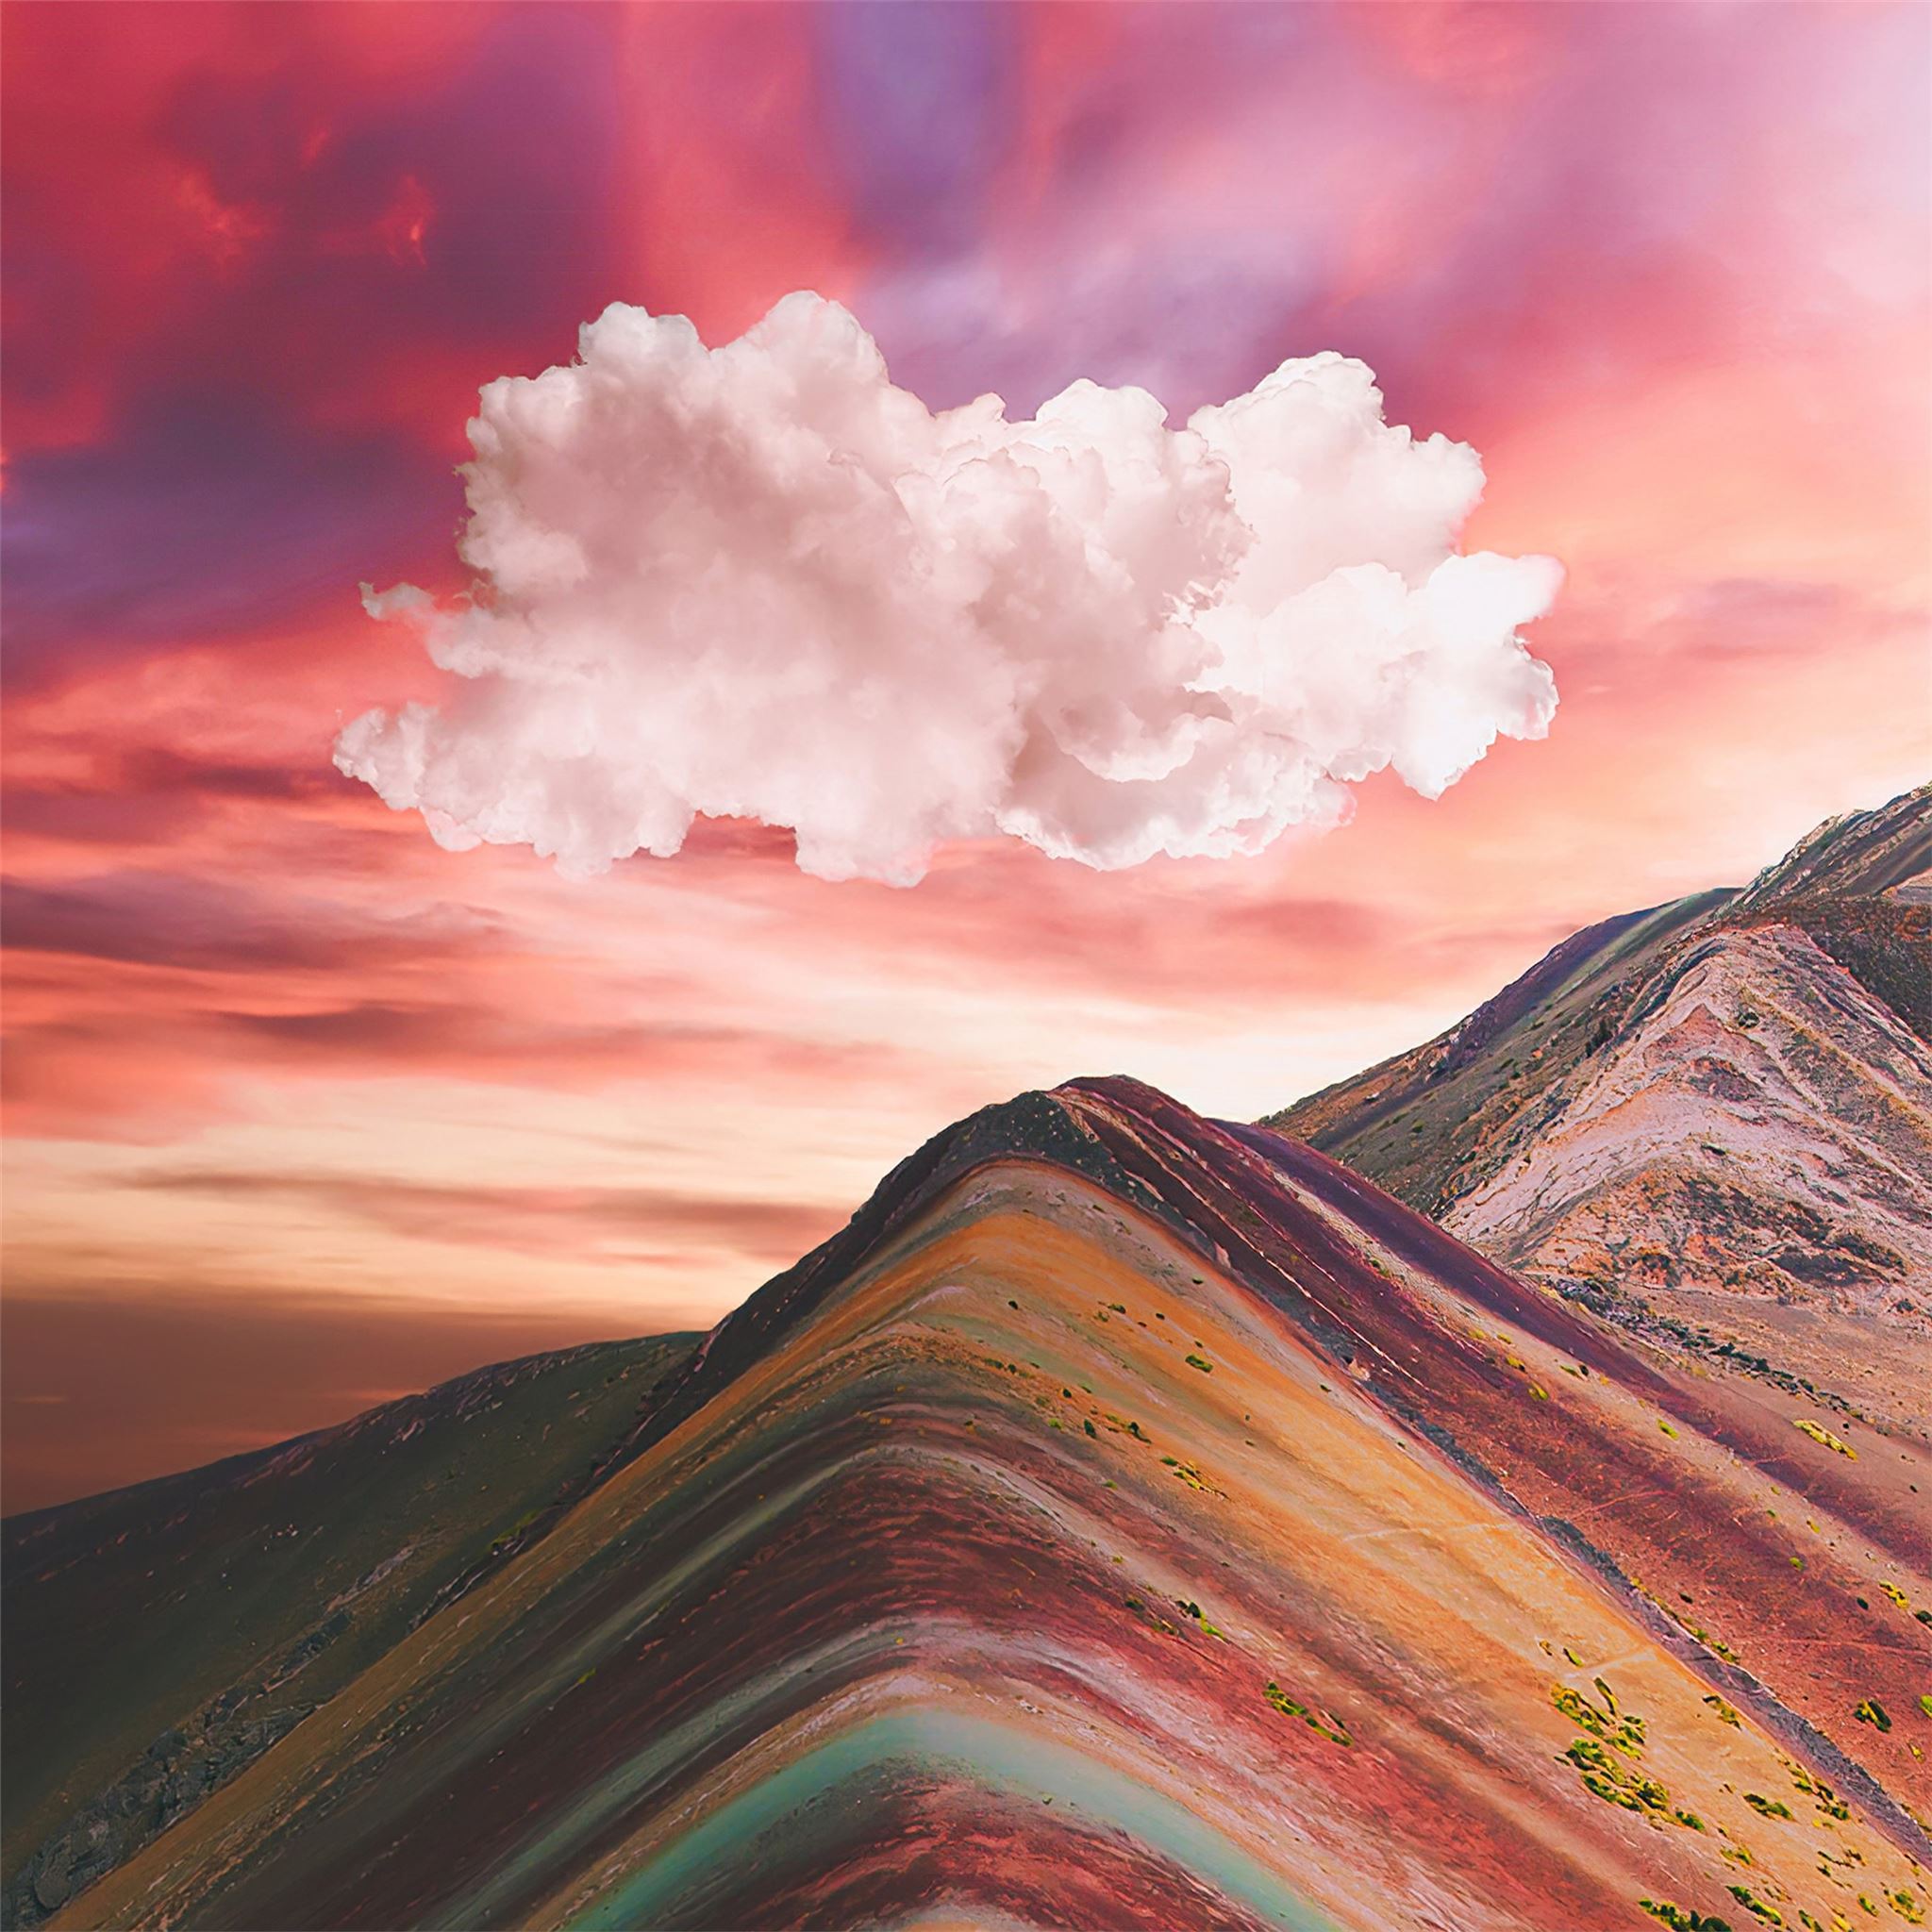 Đừng bỏ lỡ cơ hội được chiêm ngưỡng những ngọn núi mang vẻ đẹp kỳ ảo với các màu cầu vồng tuyệt đẹp. Trang web của chúng tôi chắc chắn sẽ đem đến cho bạn một trải nghiệm đầy ấn tượng và kỳ thú.